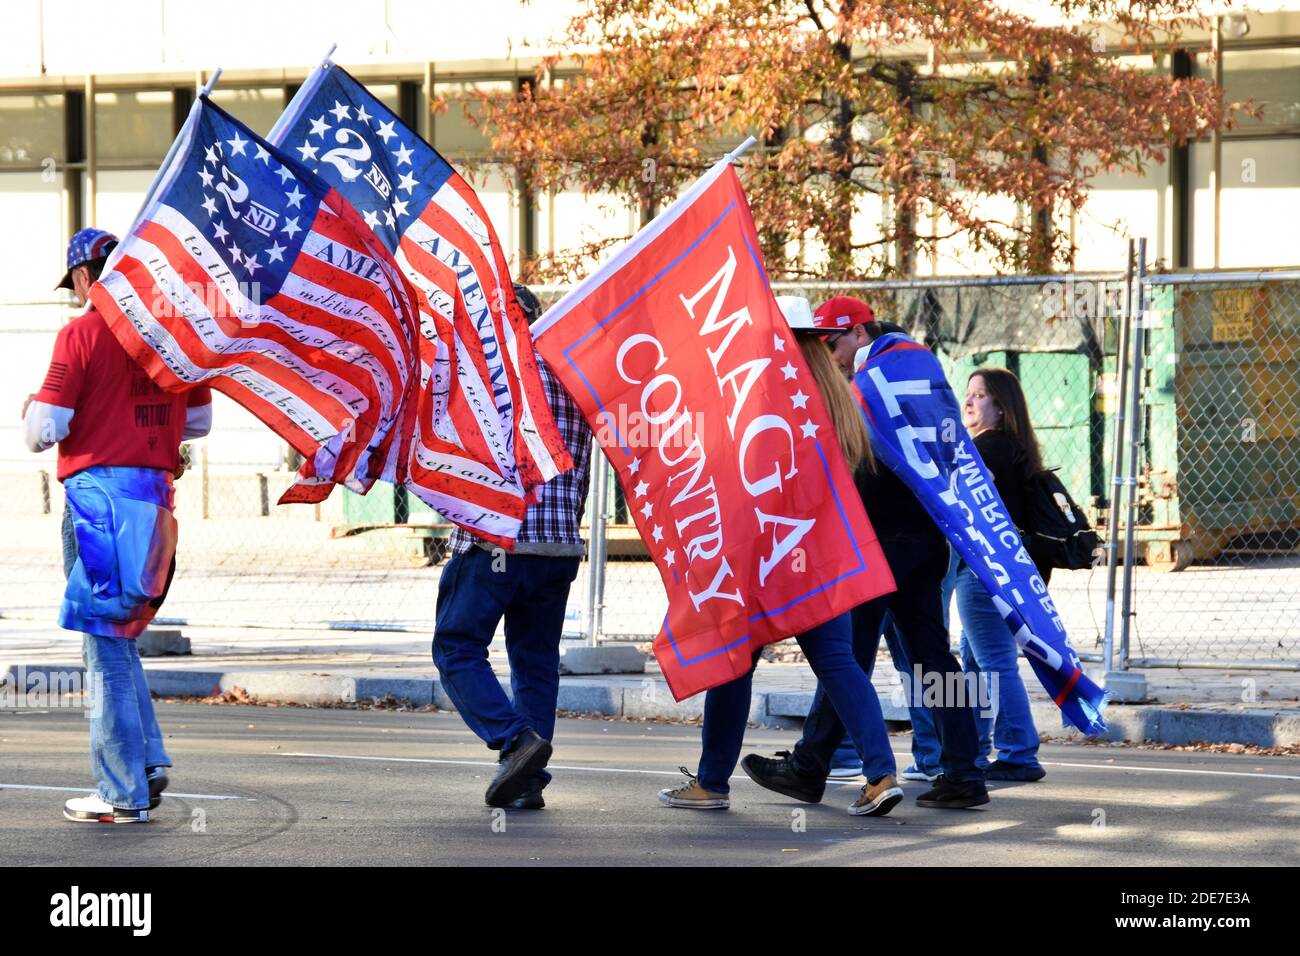 Washington DC. November 2020, 14. Million Maga Marsch. Rückansicht von Personen, die die Flagge des 2. Amendments, die Flagge des Maga-Landes und die Flagge von Trump tragen. Stockfoto